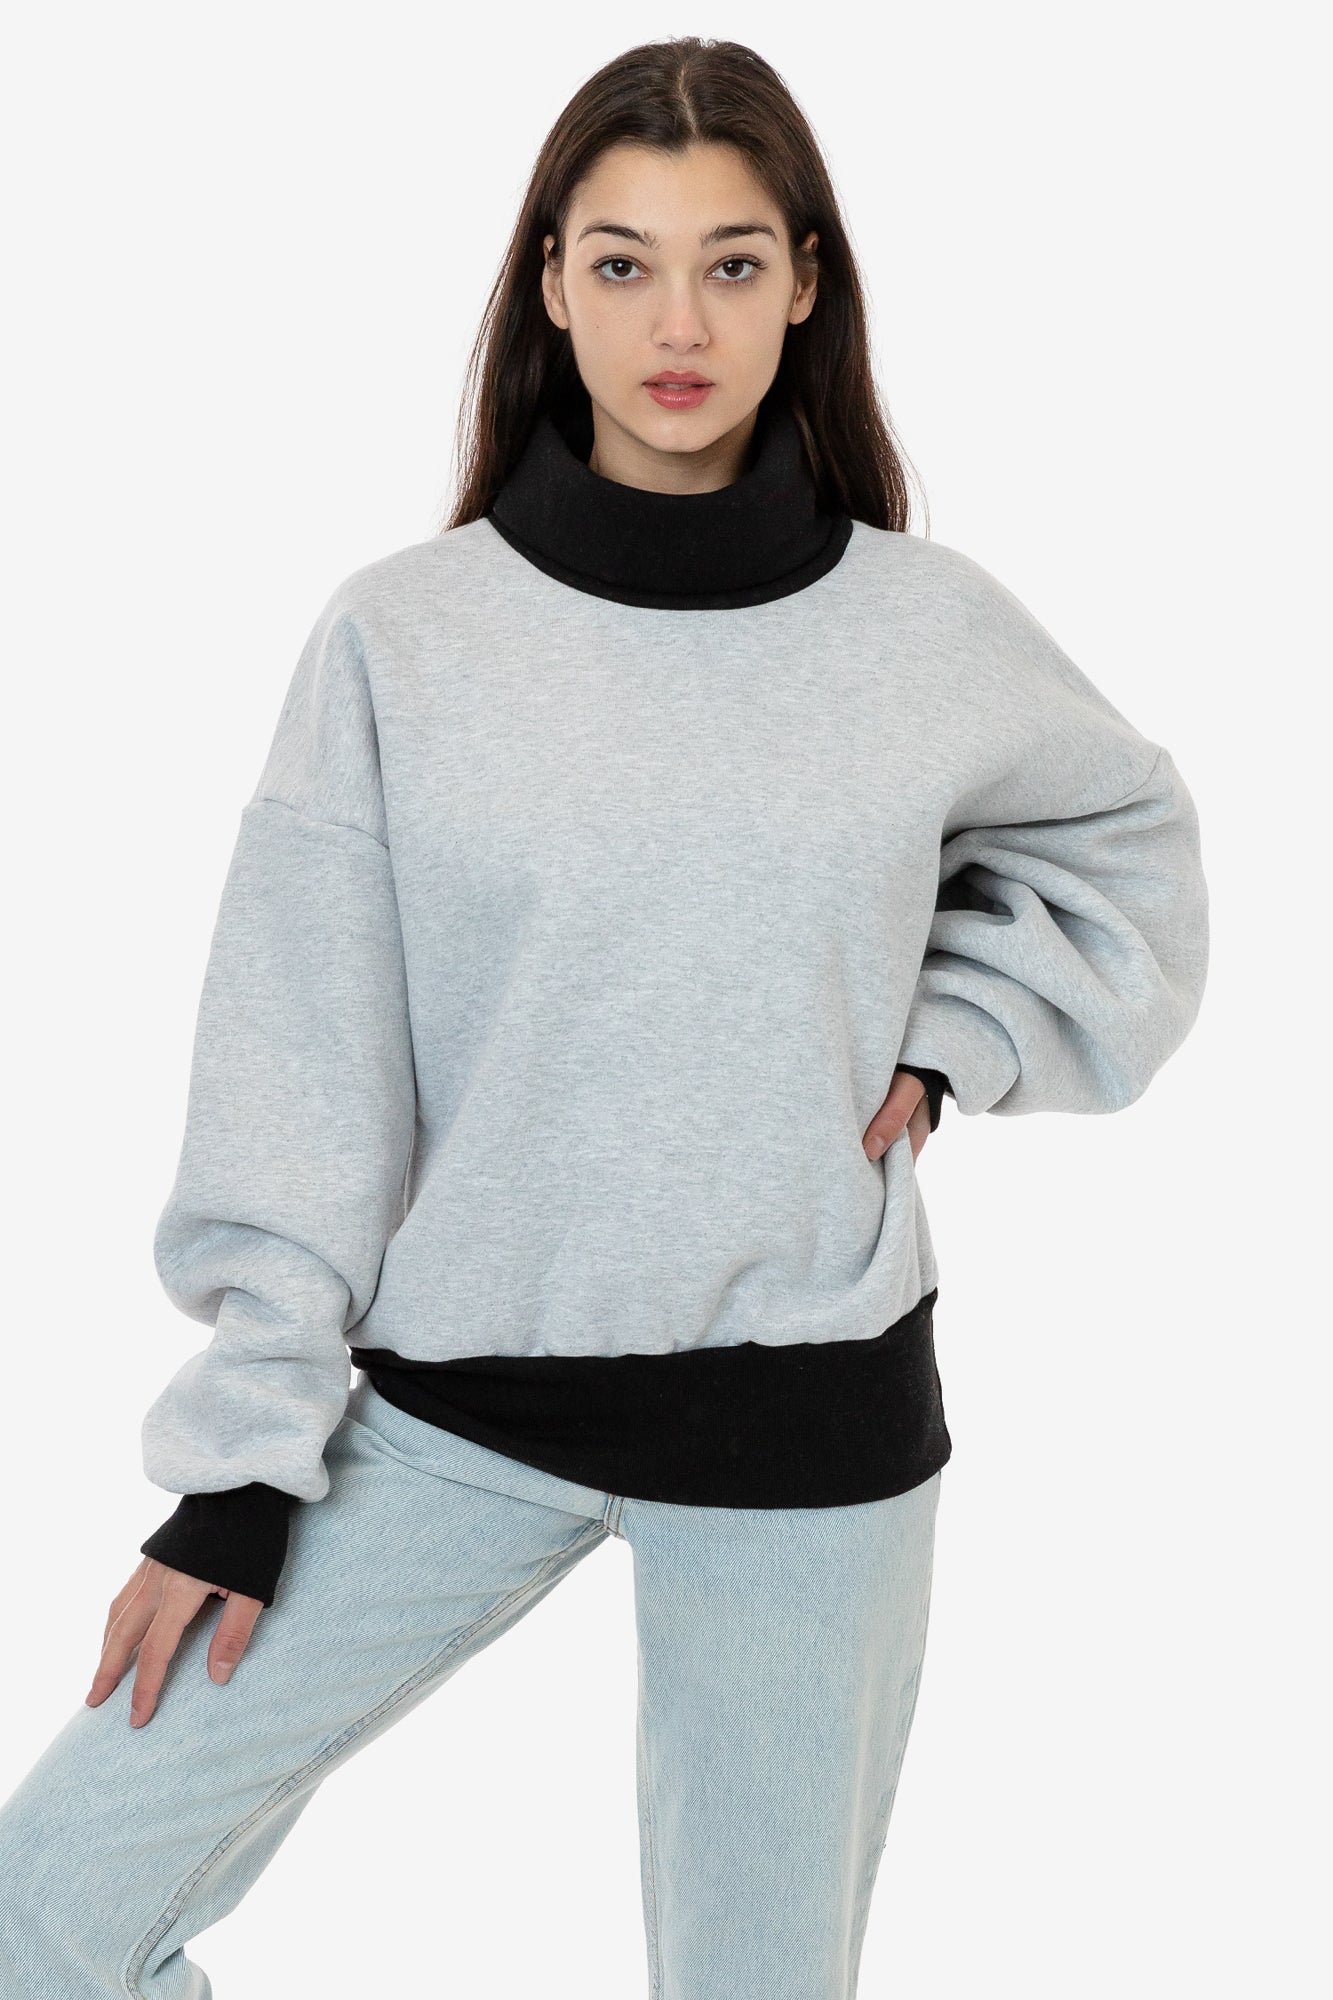 BECLOH Oversized Hoodies Fleece Sweatshirts Long Sleeve Sweaters